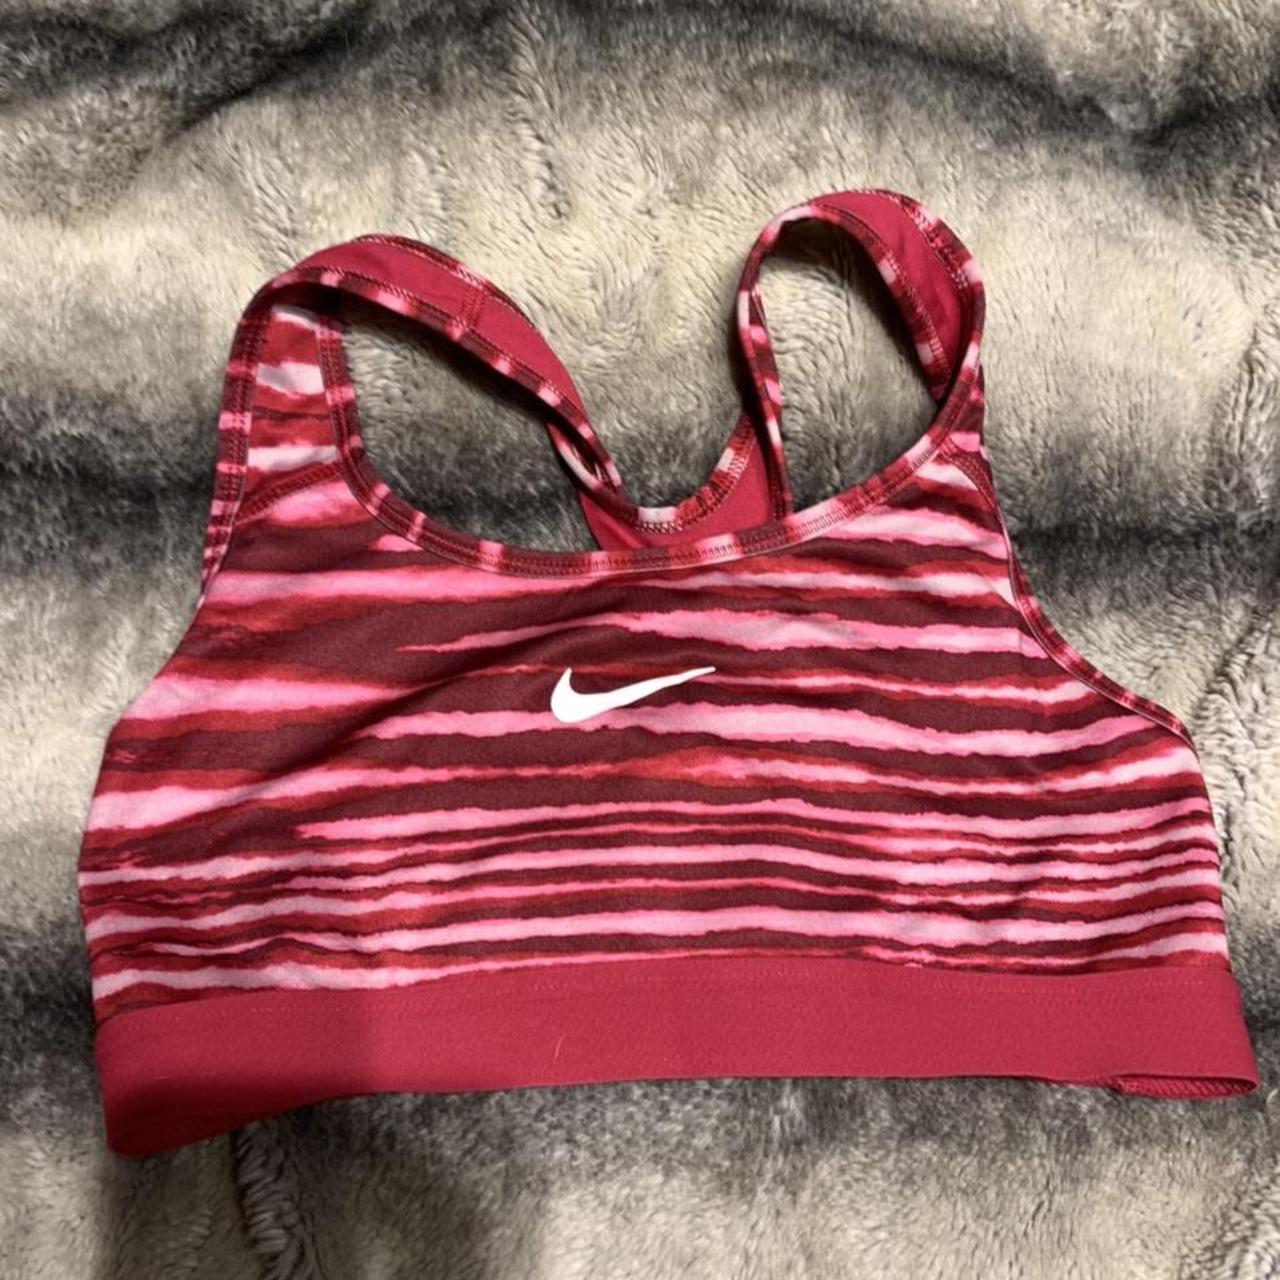 Product Image 1 - Nike sports bra  size